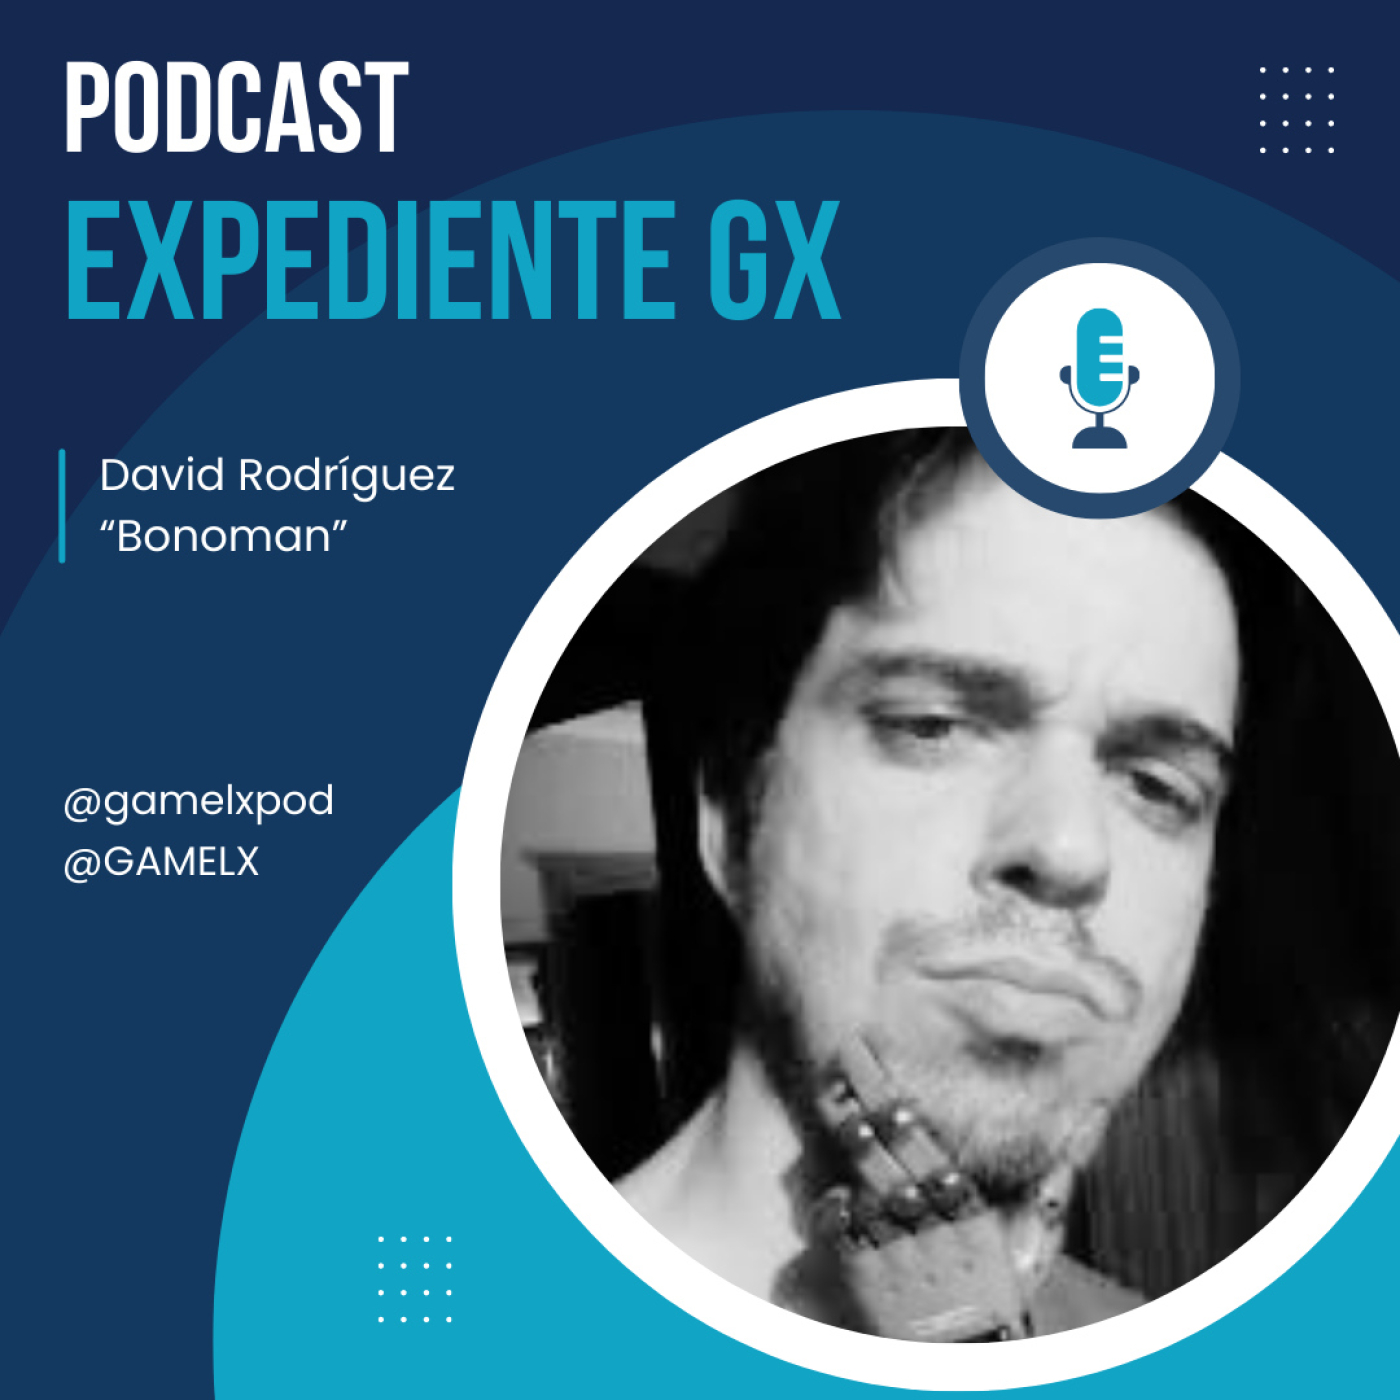 Expediente GX: David Rodríguez ”Bonoman” | Coleccionismo en videojuegos | Survival Horror | El fracaso de la VR